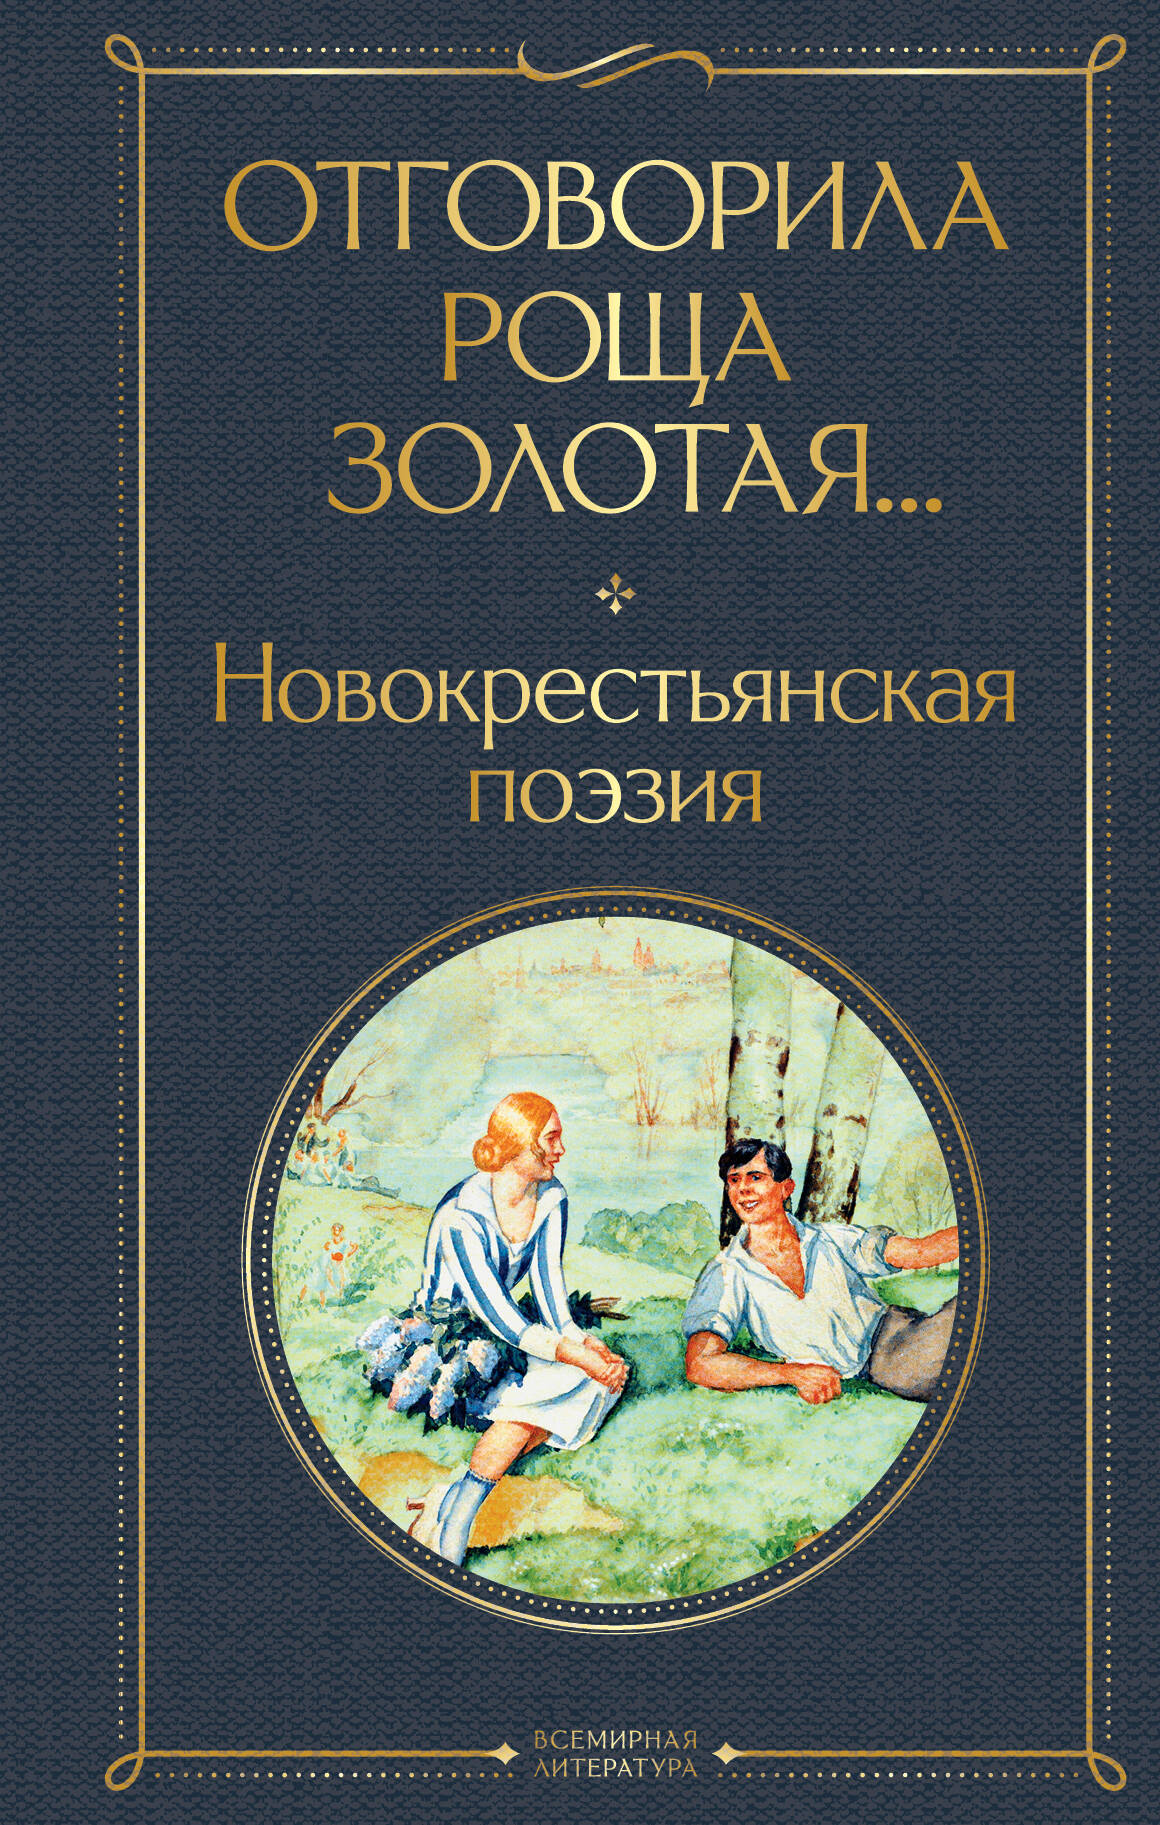  книга Отговорила роща золотая... Новокрестьянская поэзия